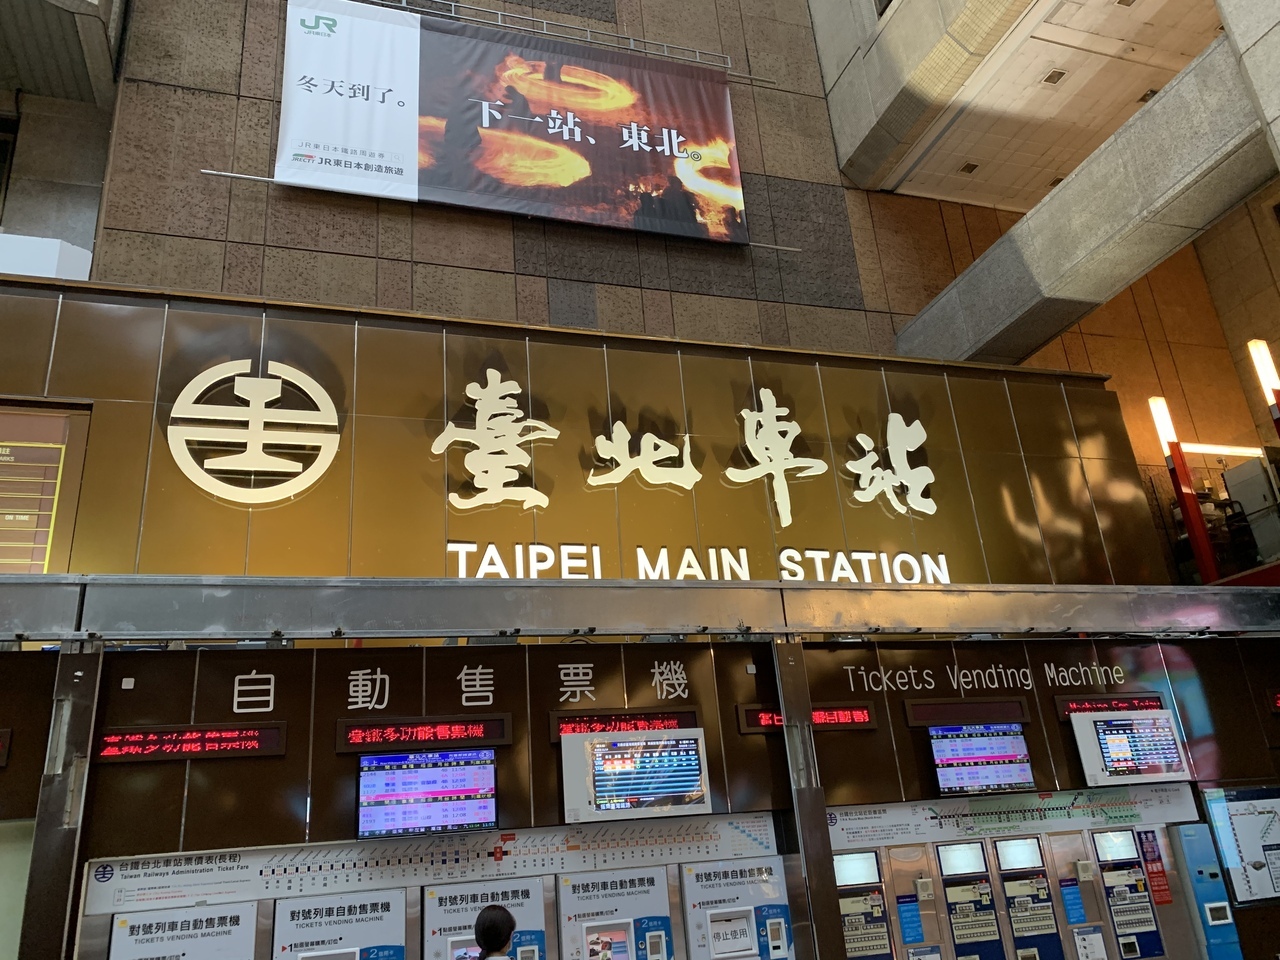 タクシーで台北駅まで来ました。

お昼を食べて
台鉄に乗ります！